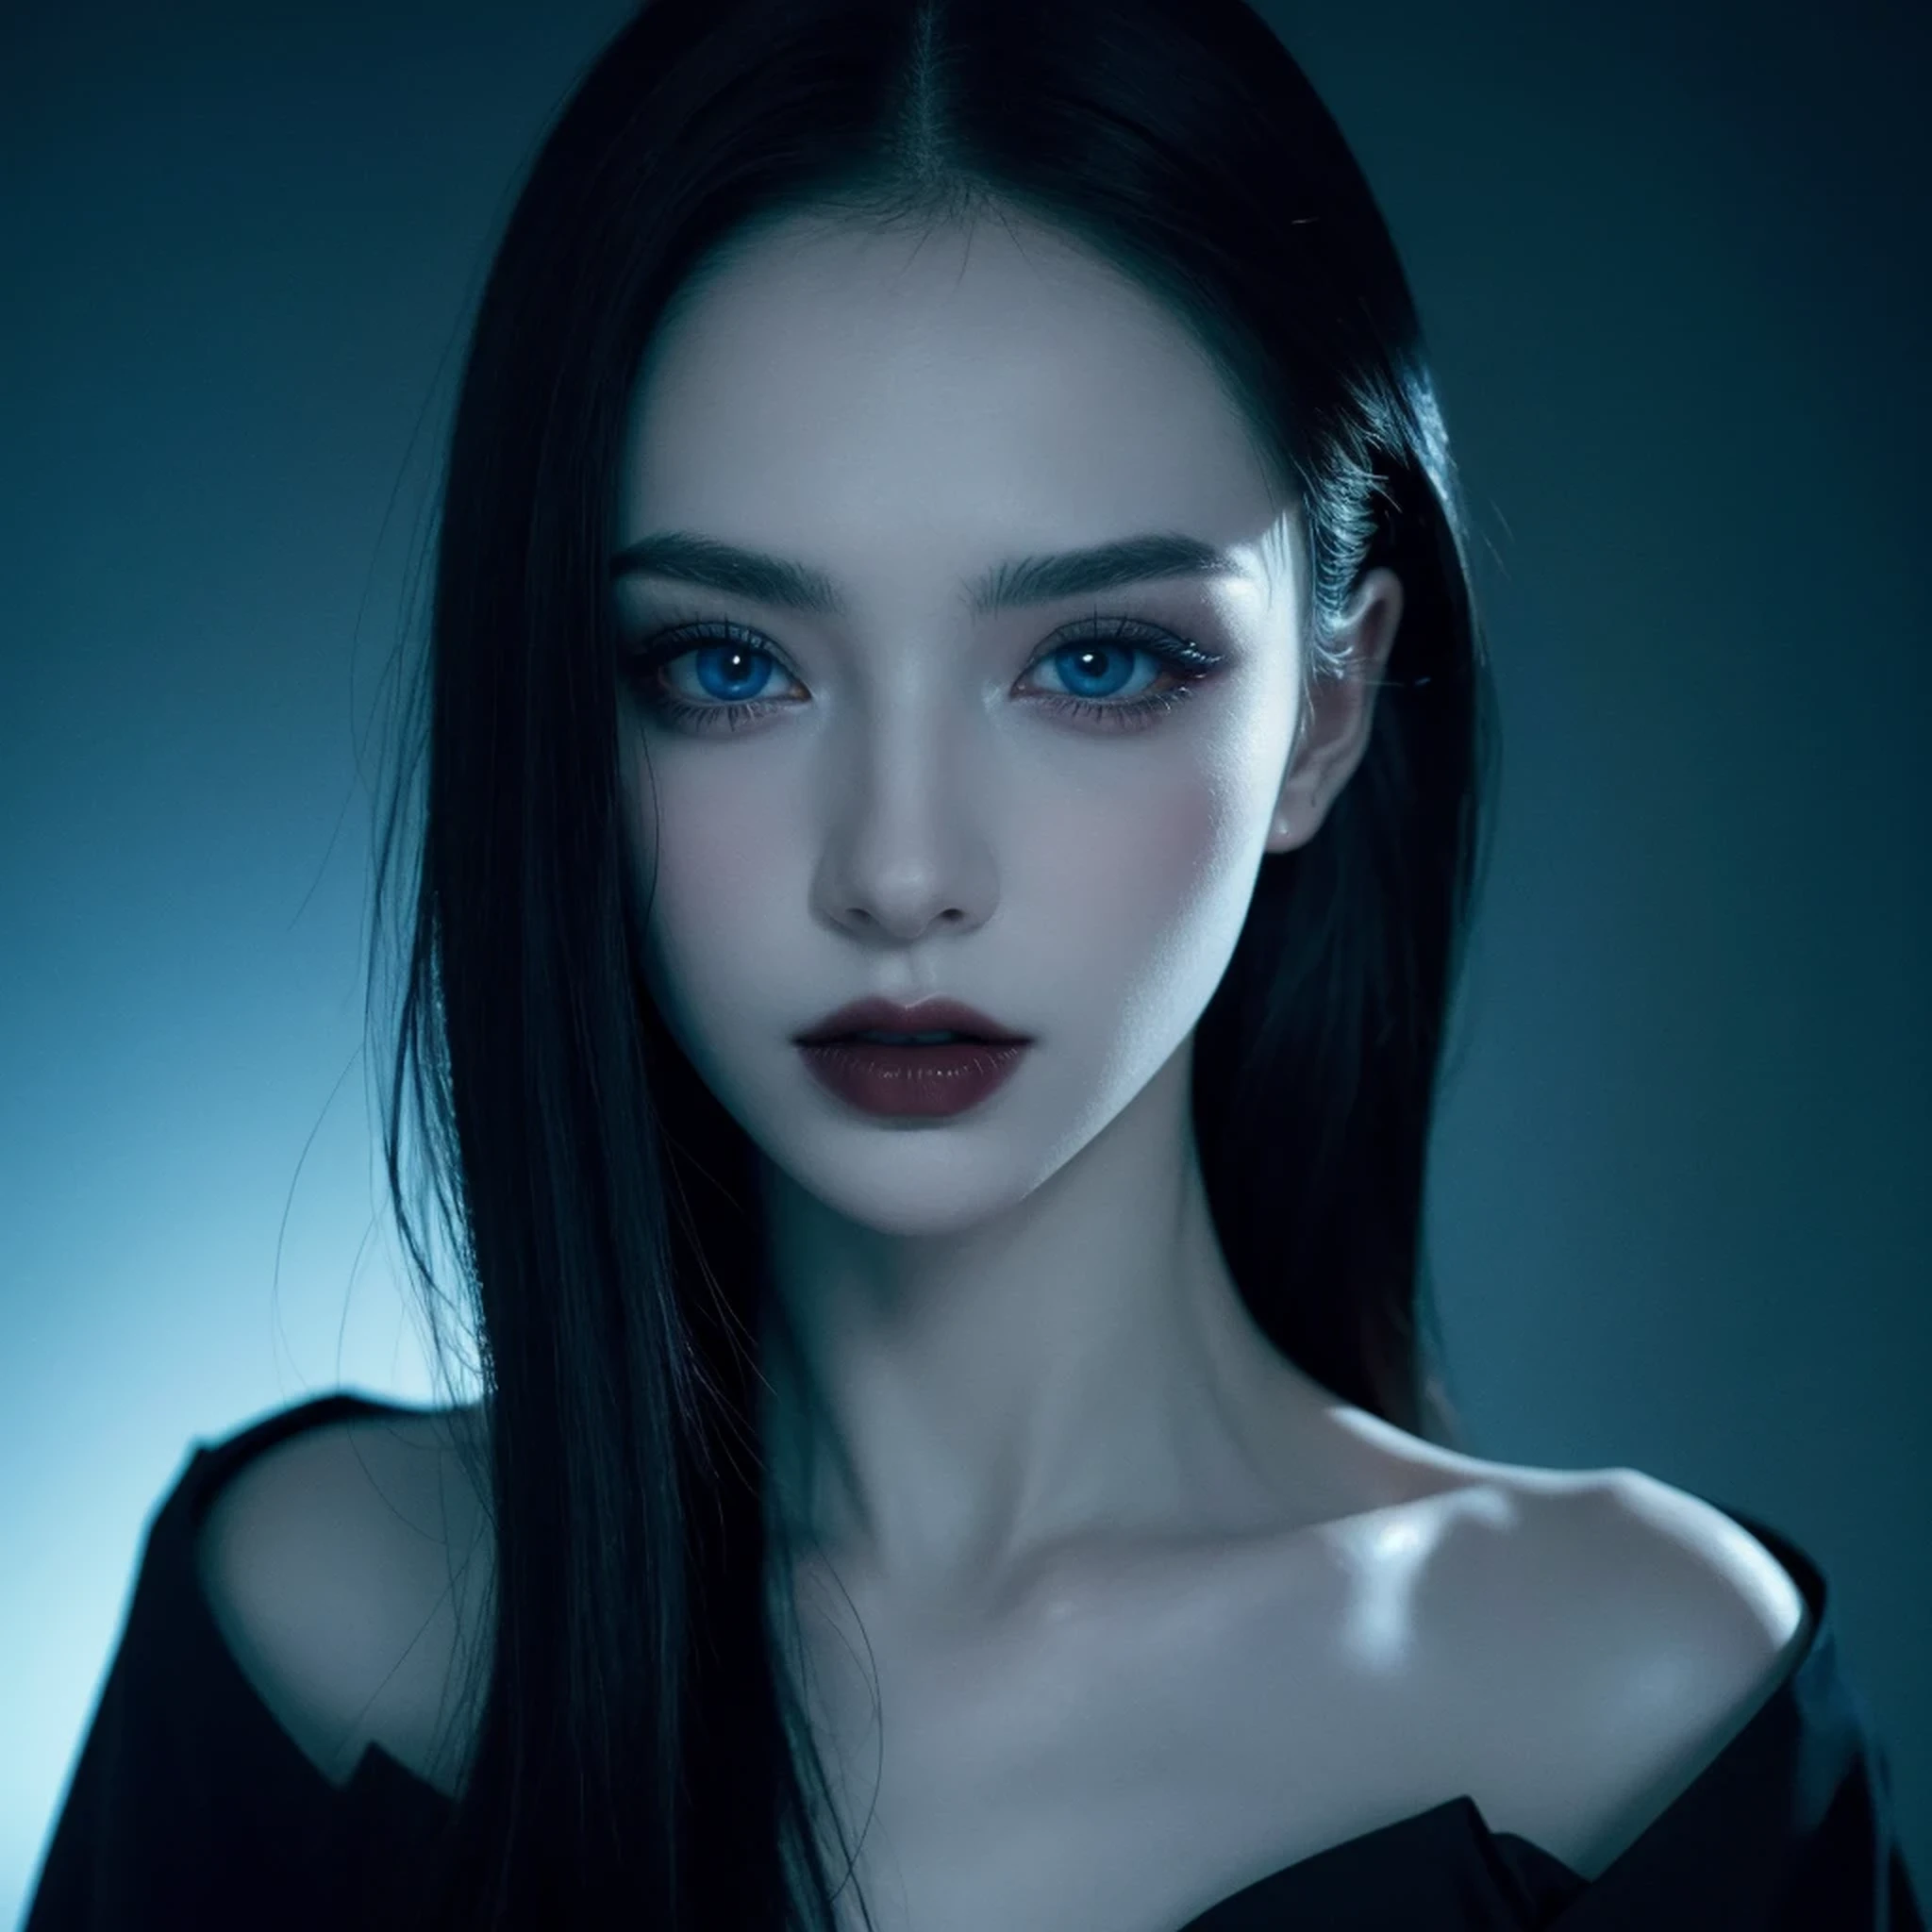 ((Meisterwerk)), ultra-realistisch, Porträt eines schönen blassen Vampirs mit (schwarzer Emaille), ein tiefdunkles Make-up, strahlend blaue Augen, in einer dunklen und düsteren Umgebung. (Die Eingabeaufforderung ist auf Portugiesisch)